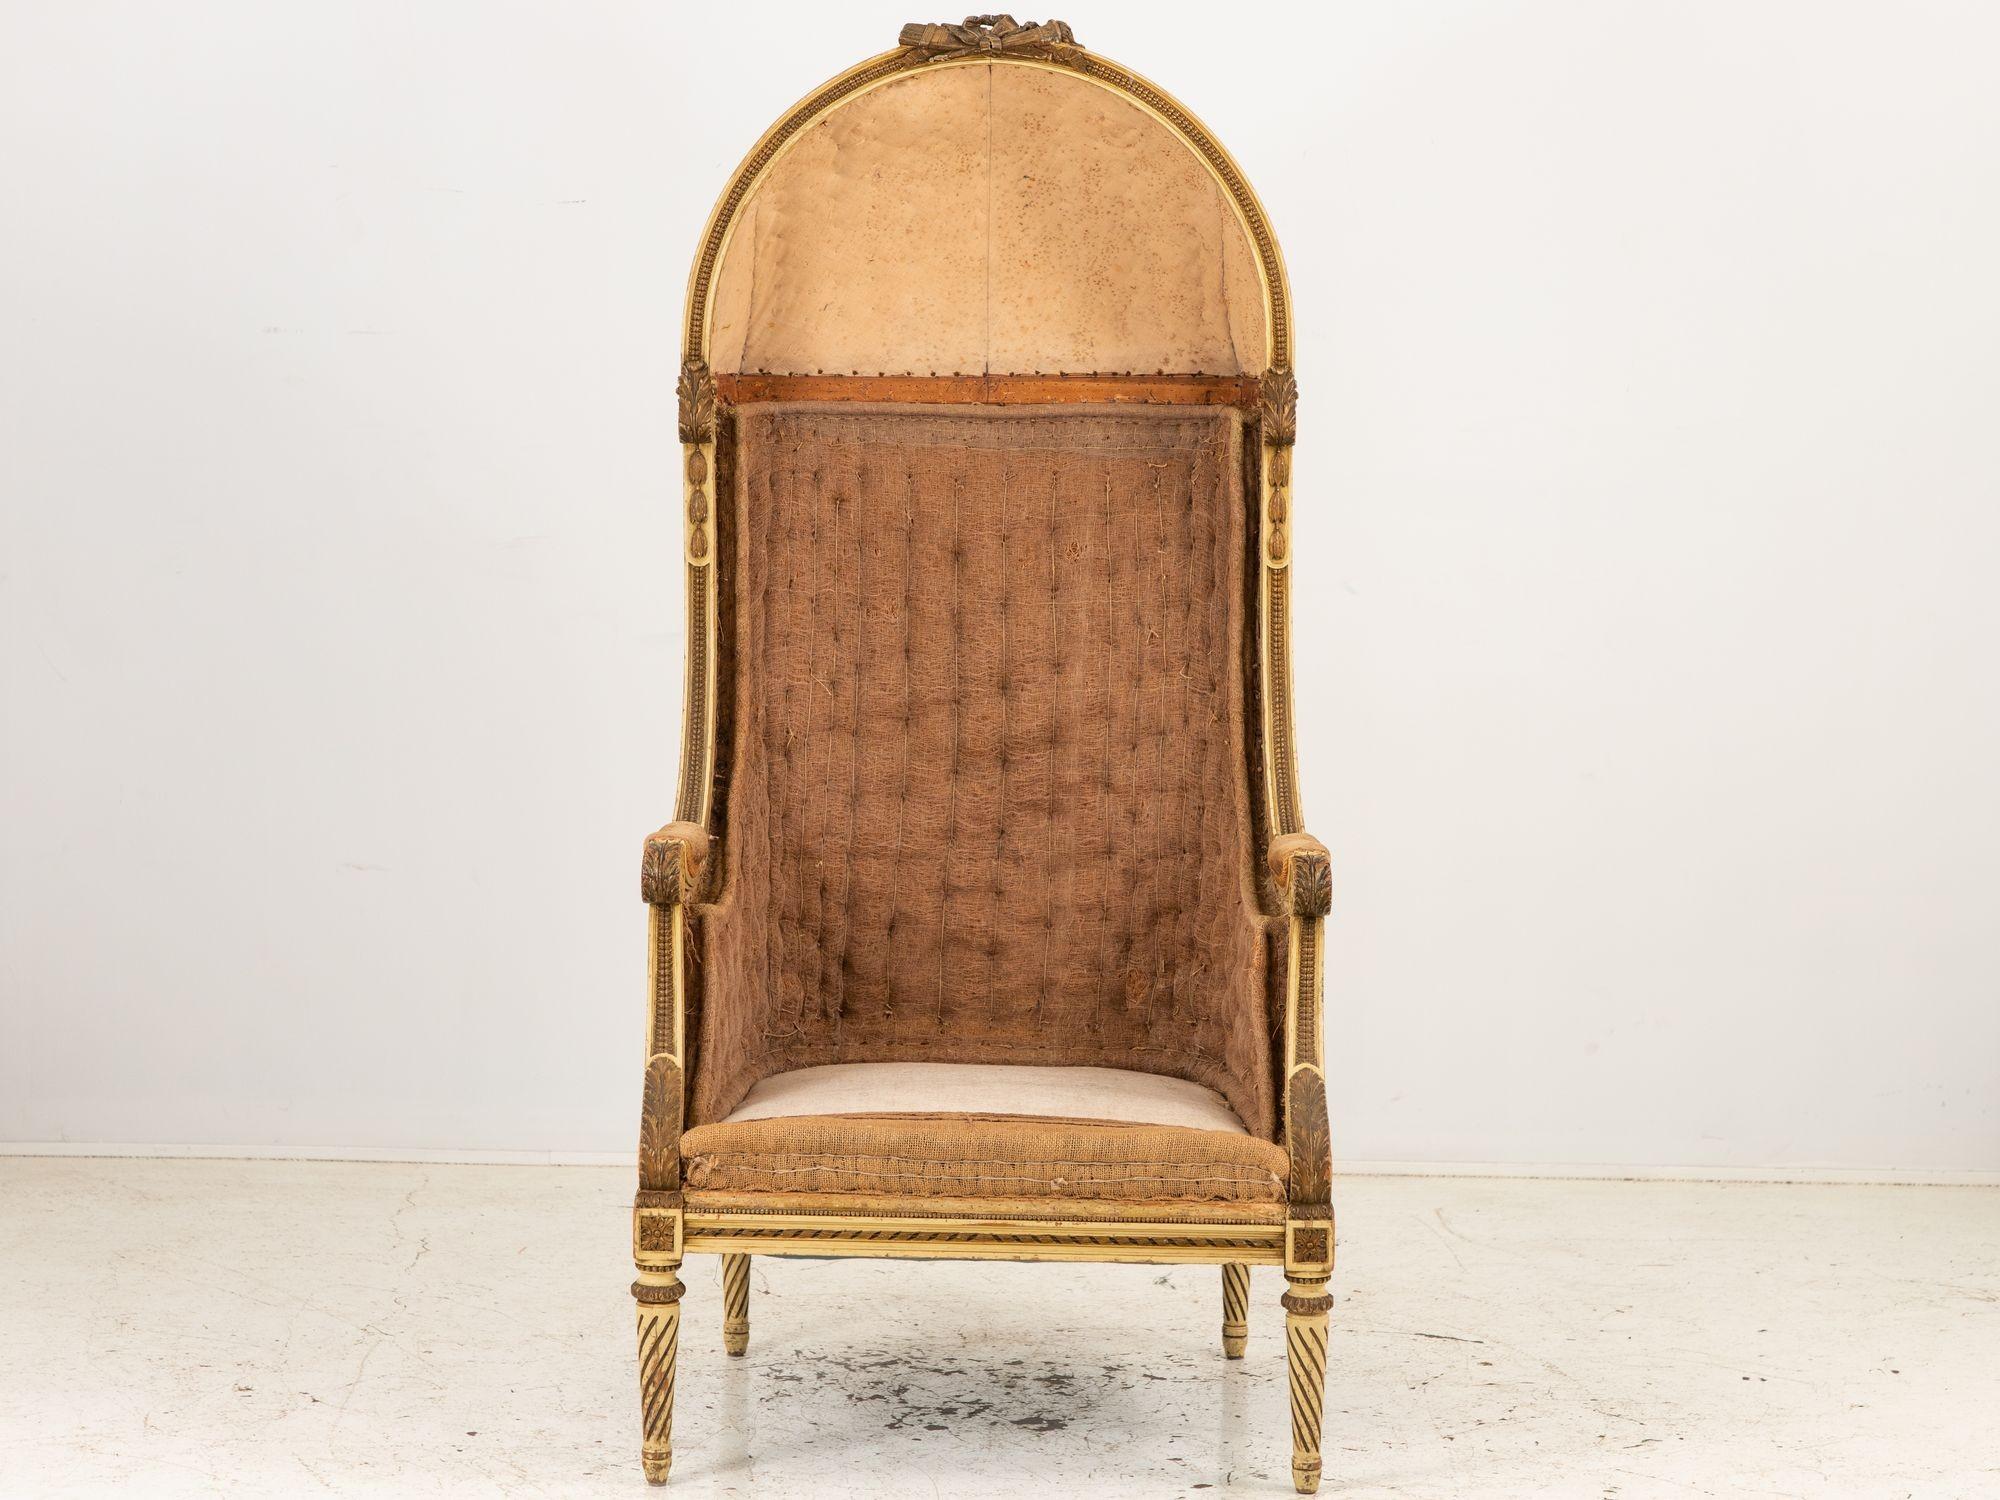 Cette exquise chaise de portier à ballons sculptés de style Louis XV du XIXe siècle témoigne de l'élégance intemporelle de l'artisanat français. Fabriquée en France au cours de la seconde moitié du XIXe siècle, cette chaise présente des vestiges de